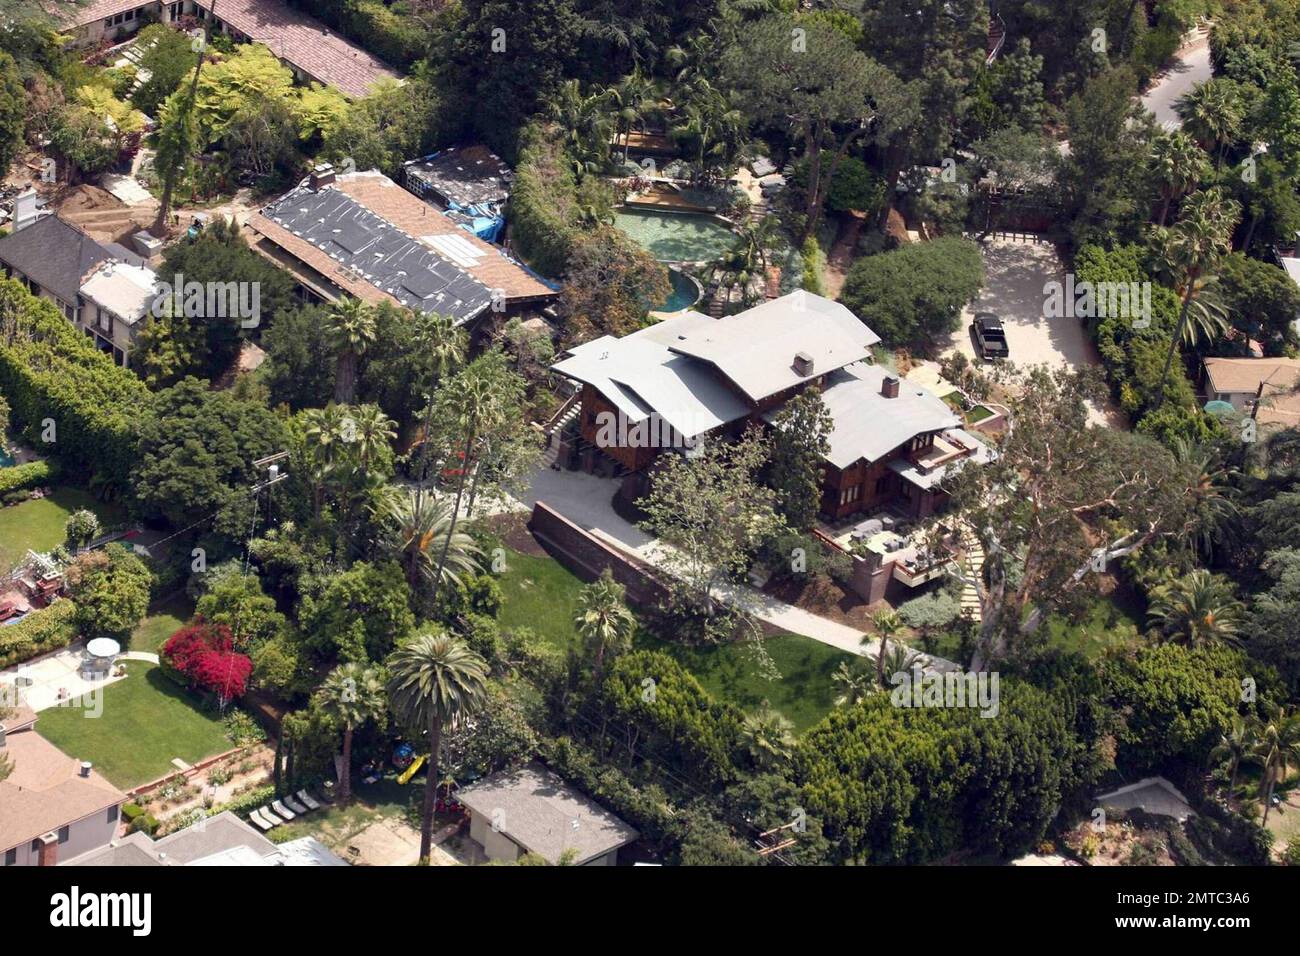 Esclusivo!! Questo è il vasto complesso hollywoodiano di Brad Pitt e Angelina  Jolie che occupa quattro case a Los Feliz. Secondo i rapporti recenti, Brad  Pitt ha lasciato la casa affittata della